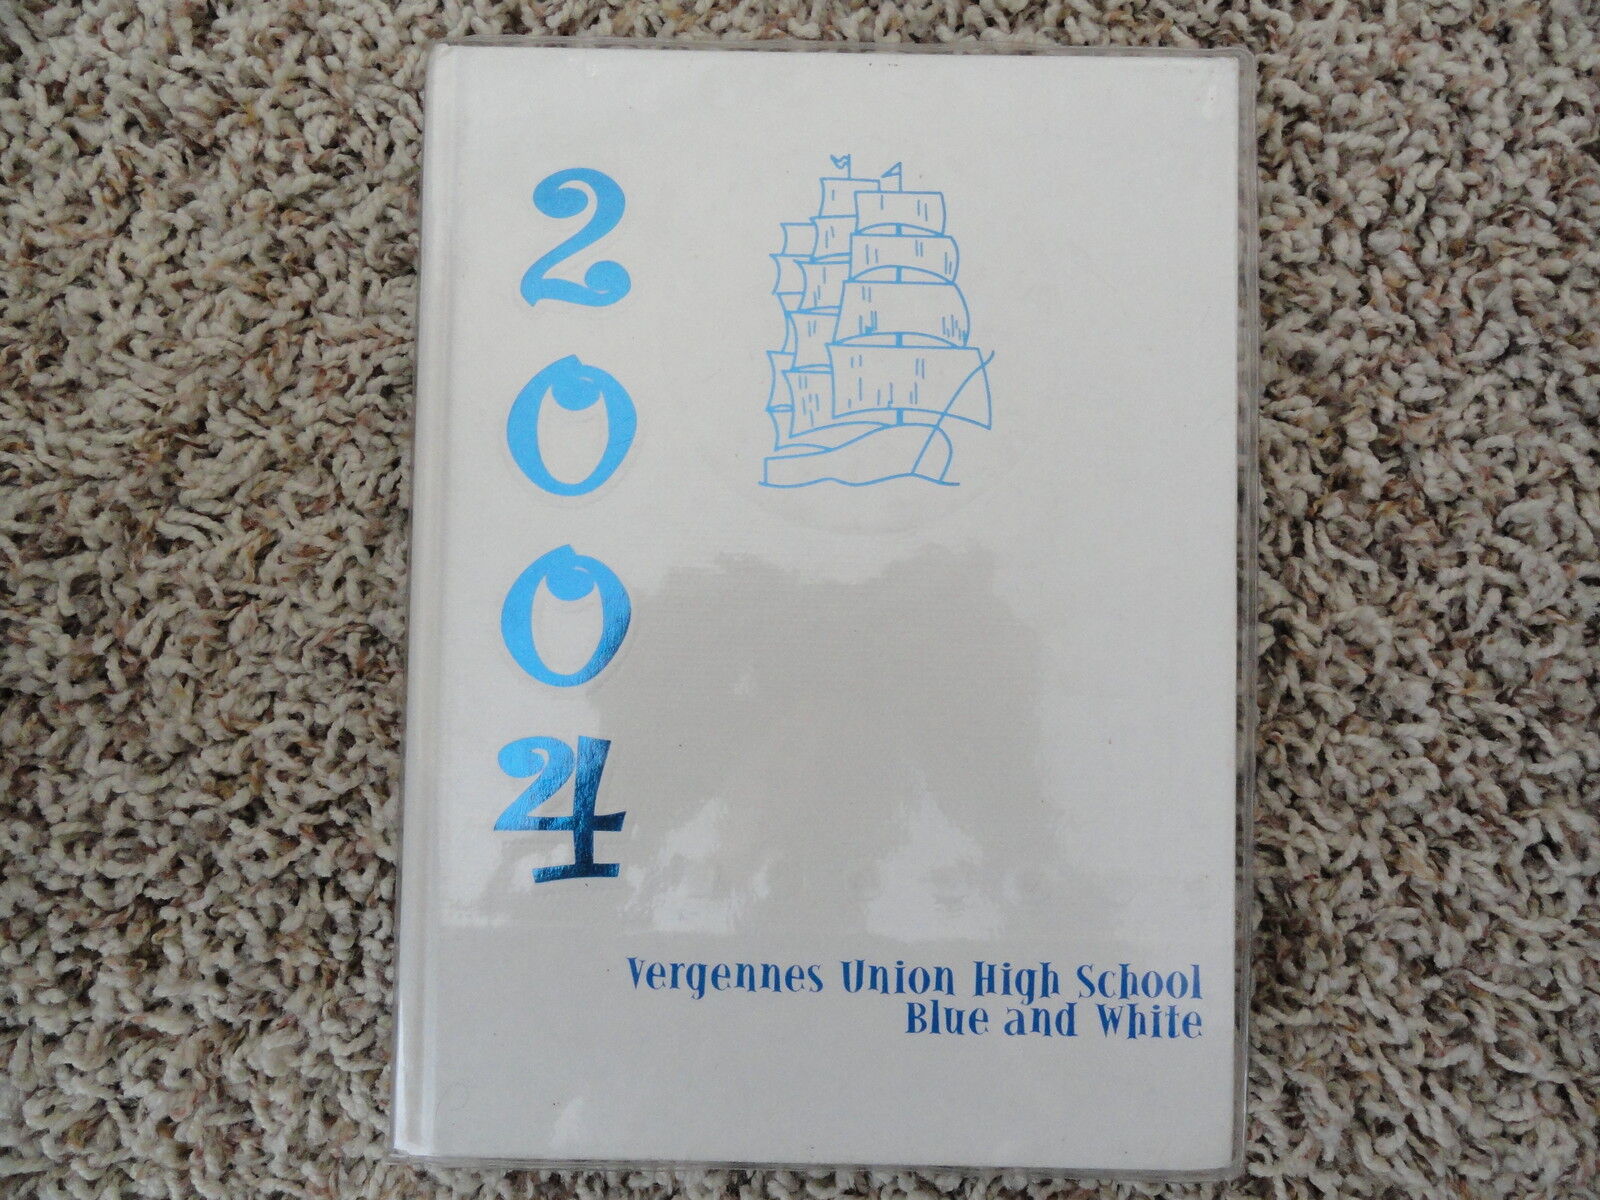 2004 Vergennes Union High School Yearbook from Vergennes VT